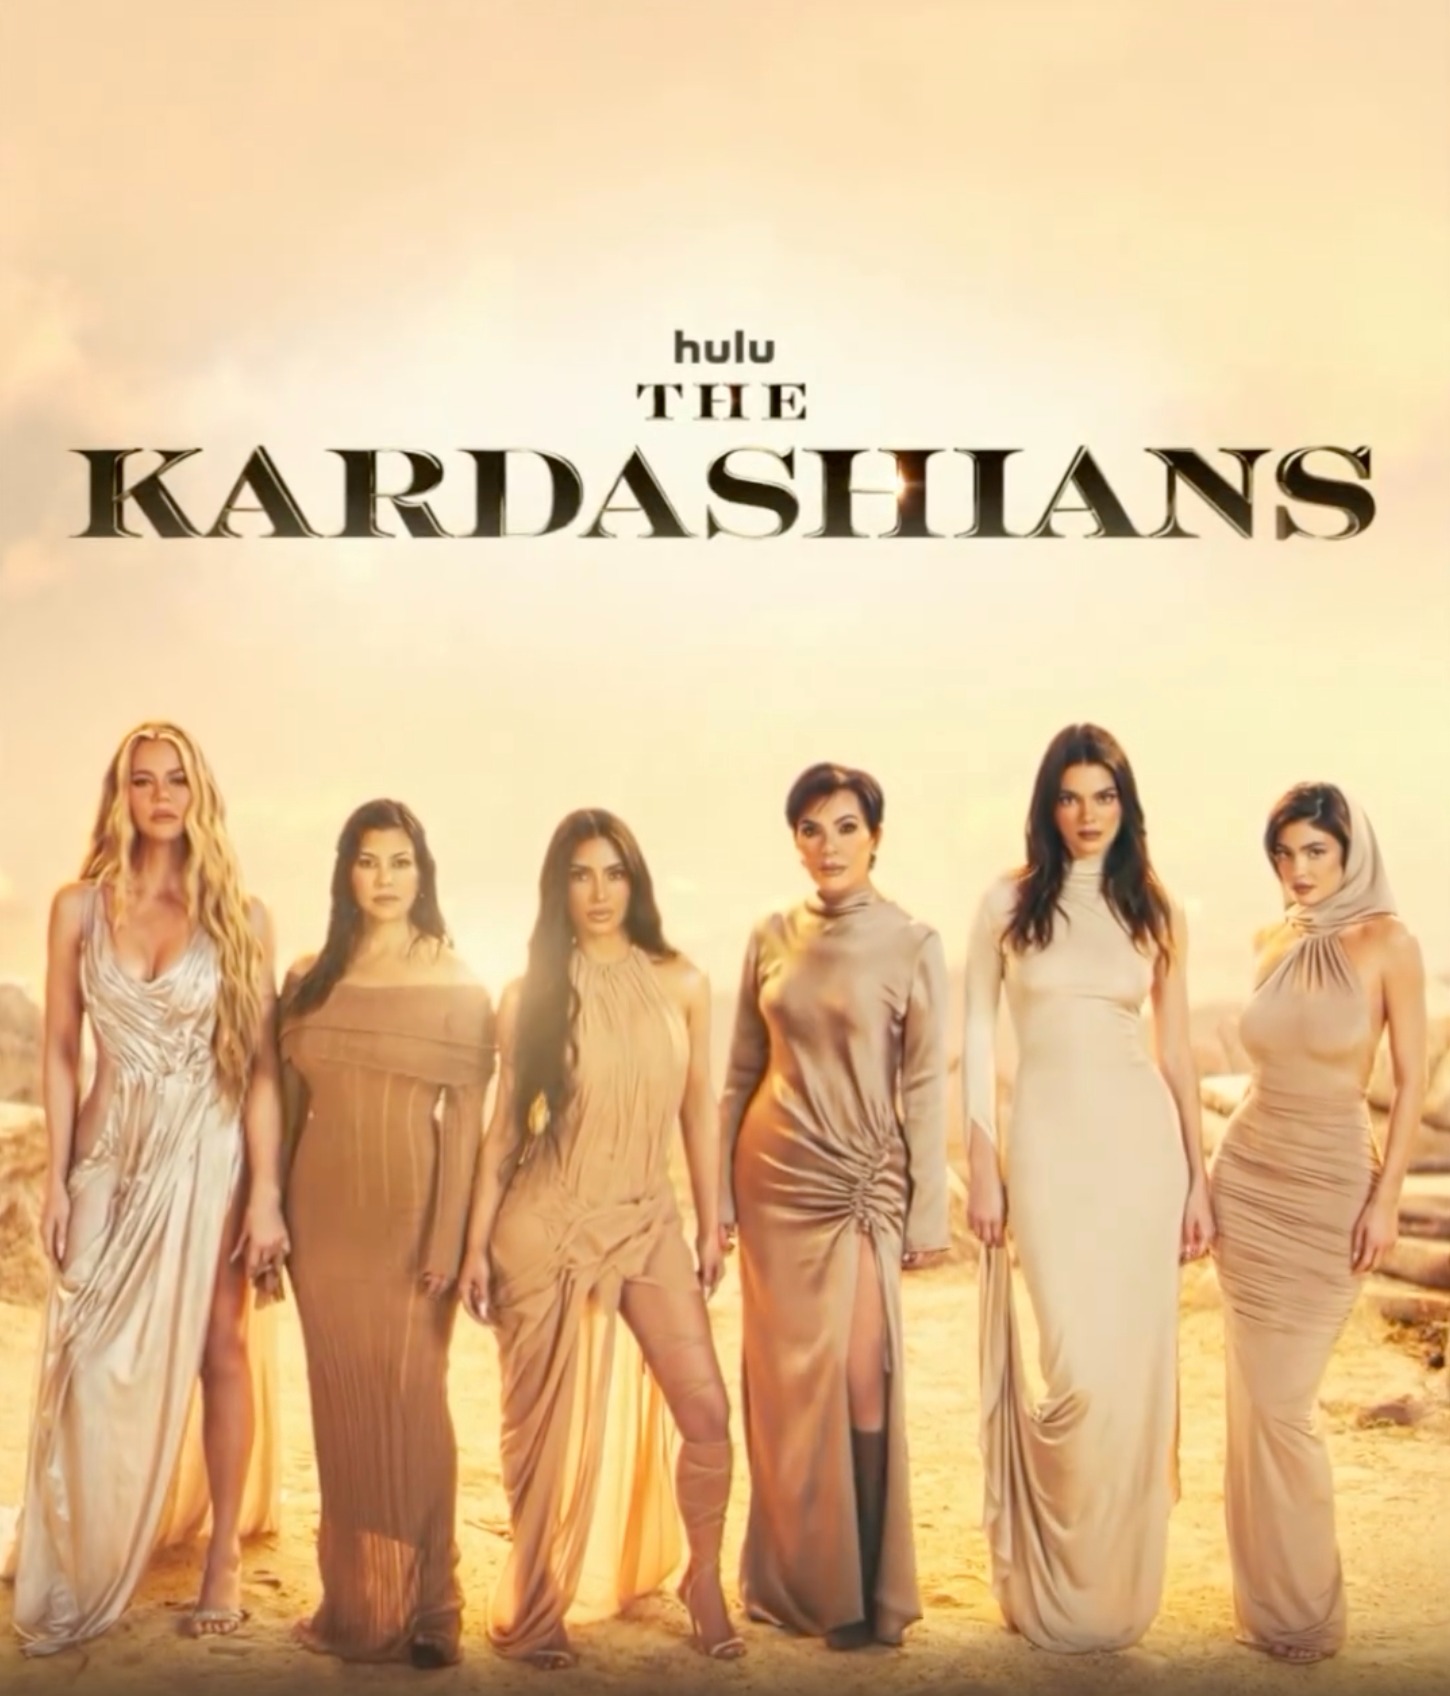 Season 5 of The Kardashians premieres on May 25